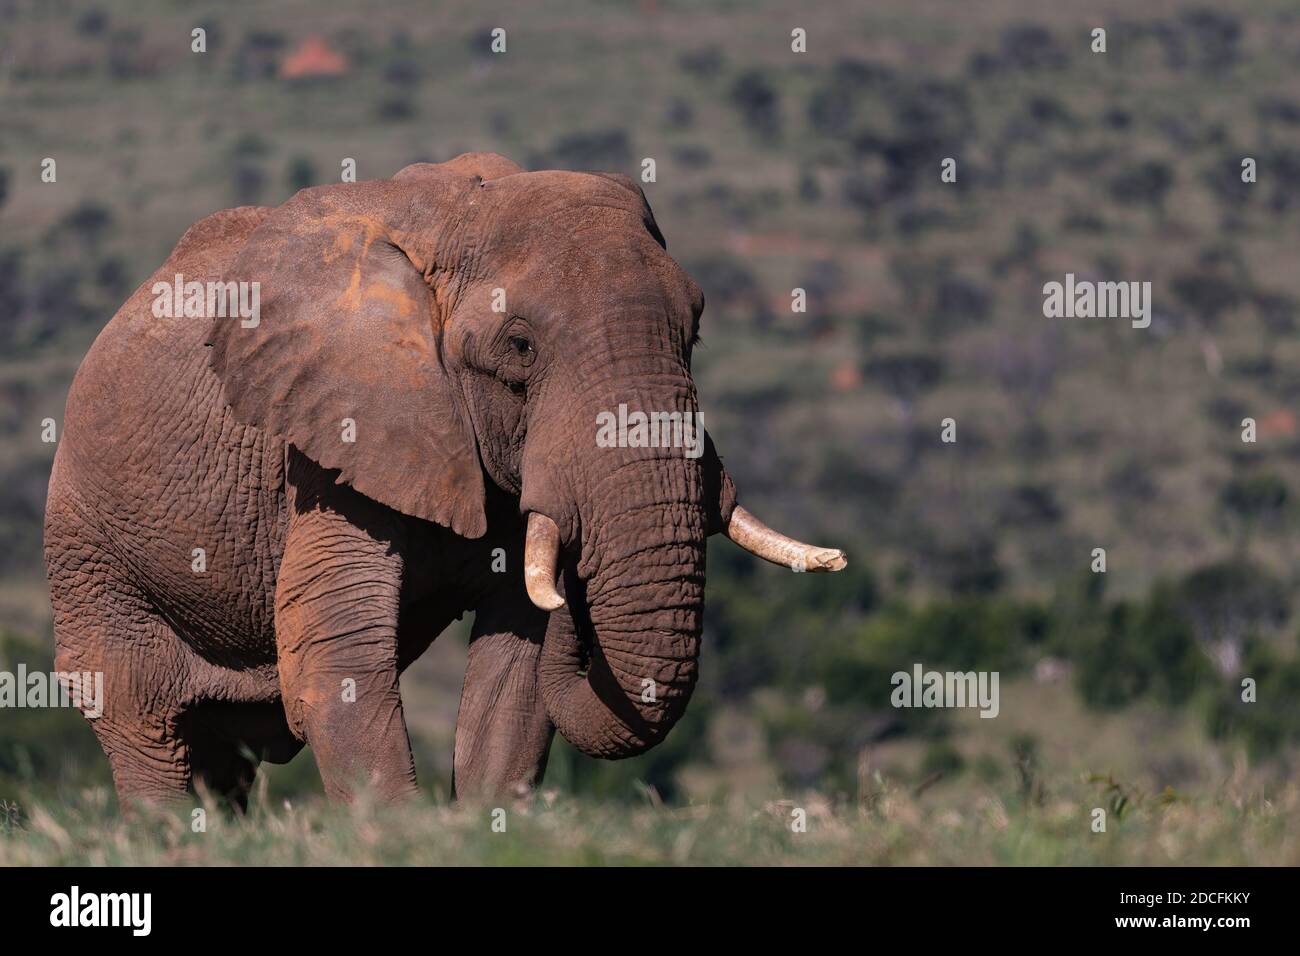 African elephant, Loxodanta africana Stock Photo